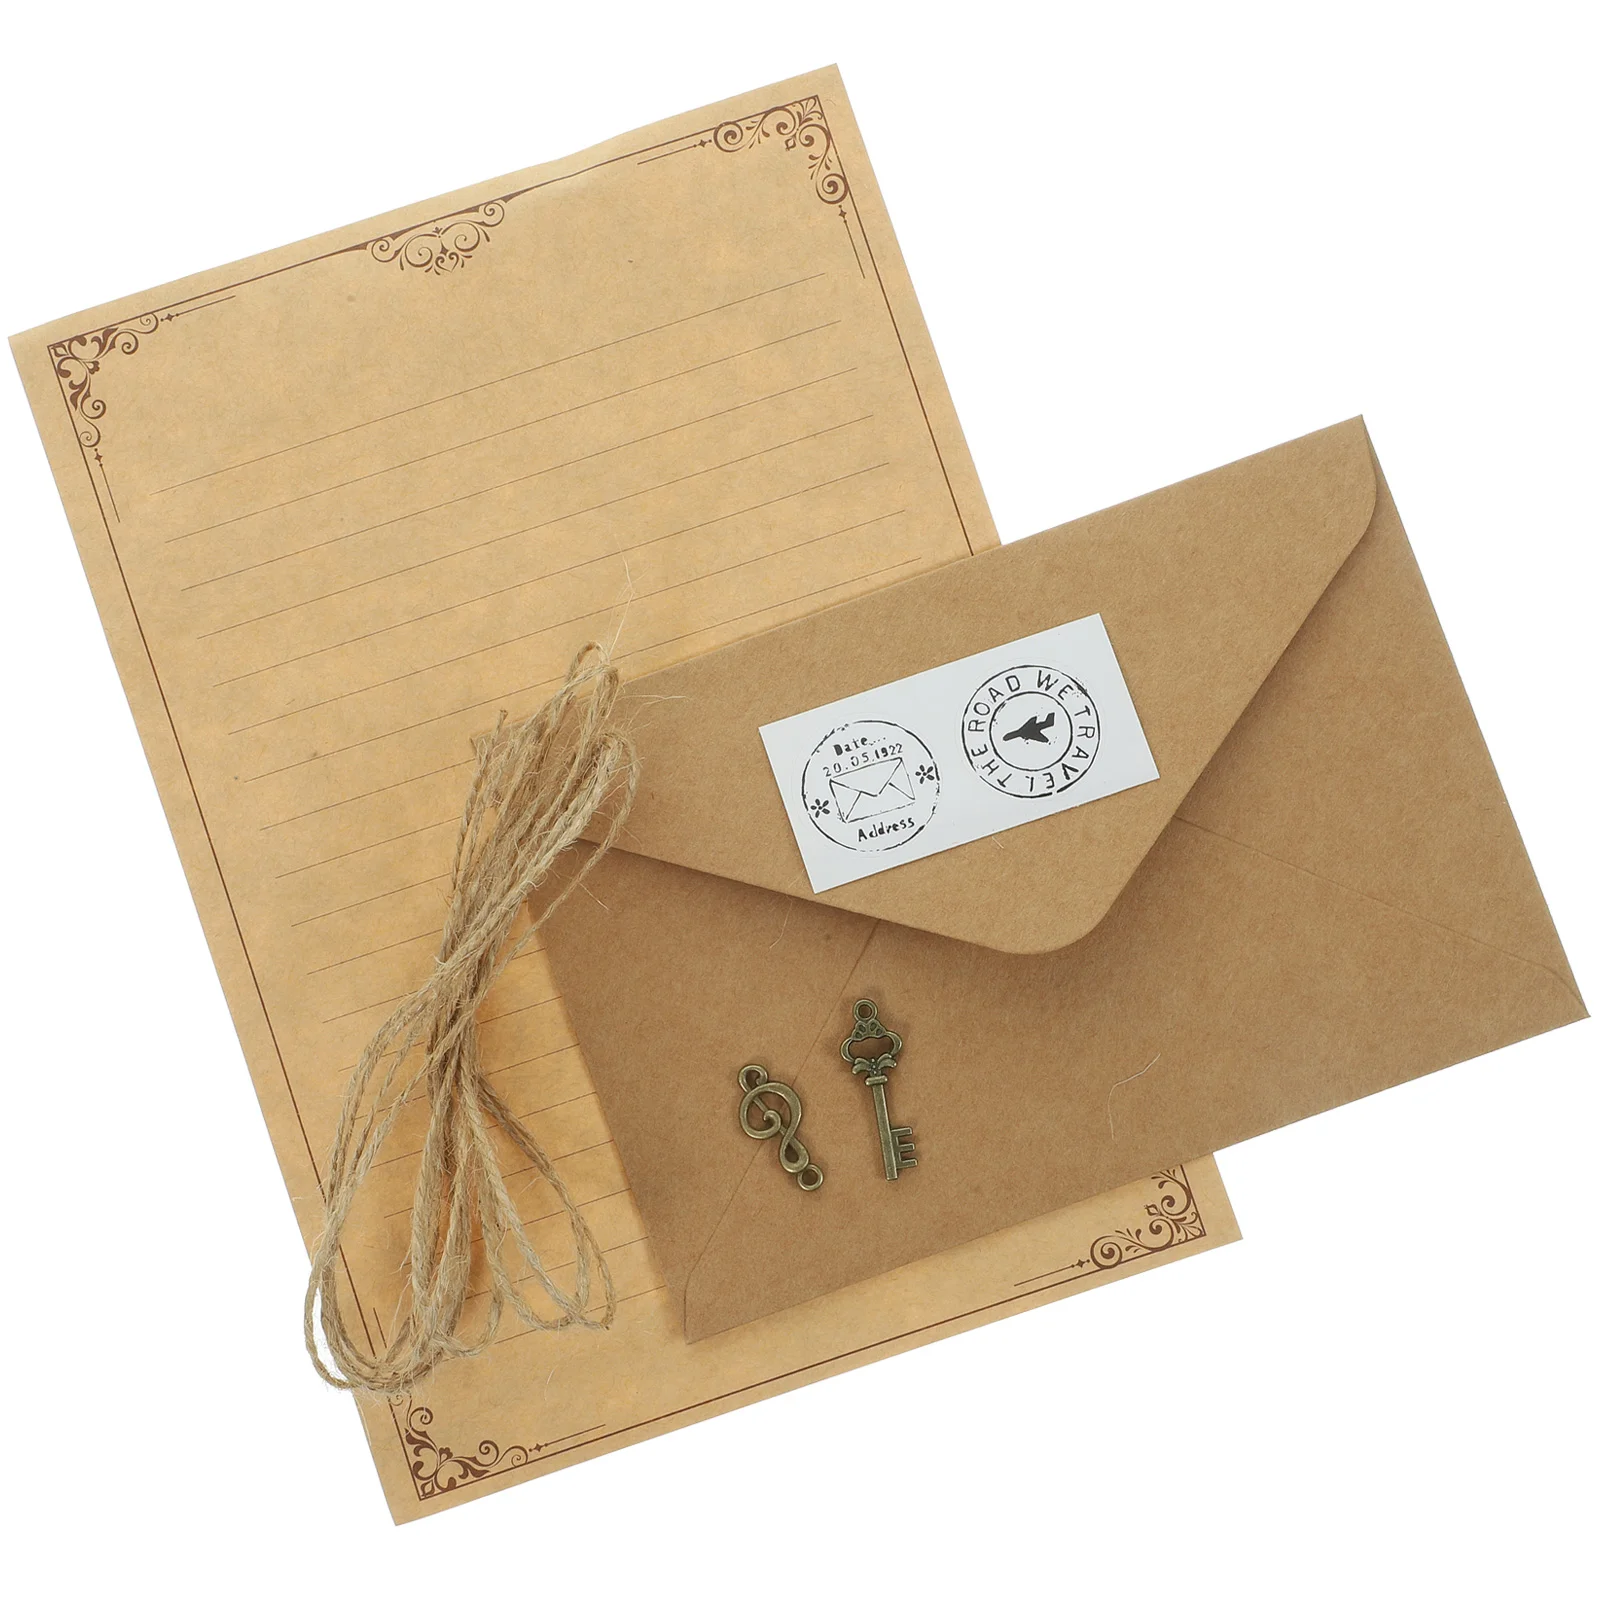 

Бумажные конверты Набор для письма, подарок, канцелярские товары для путешественников, канцелярские принадлежности, записная книжка, милый конверт для деловых отправлений в винтажном стиле